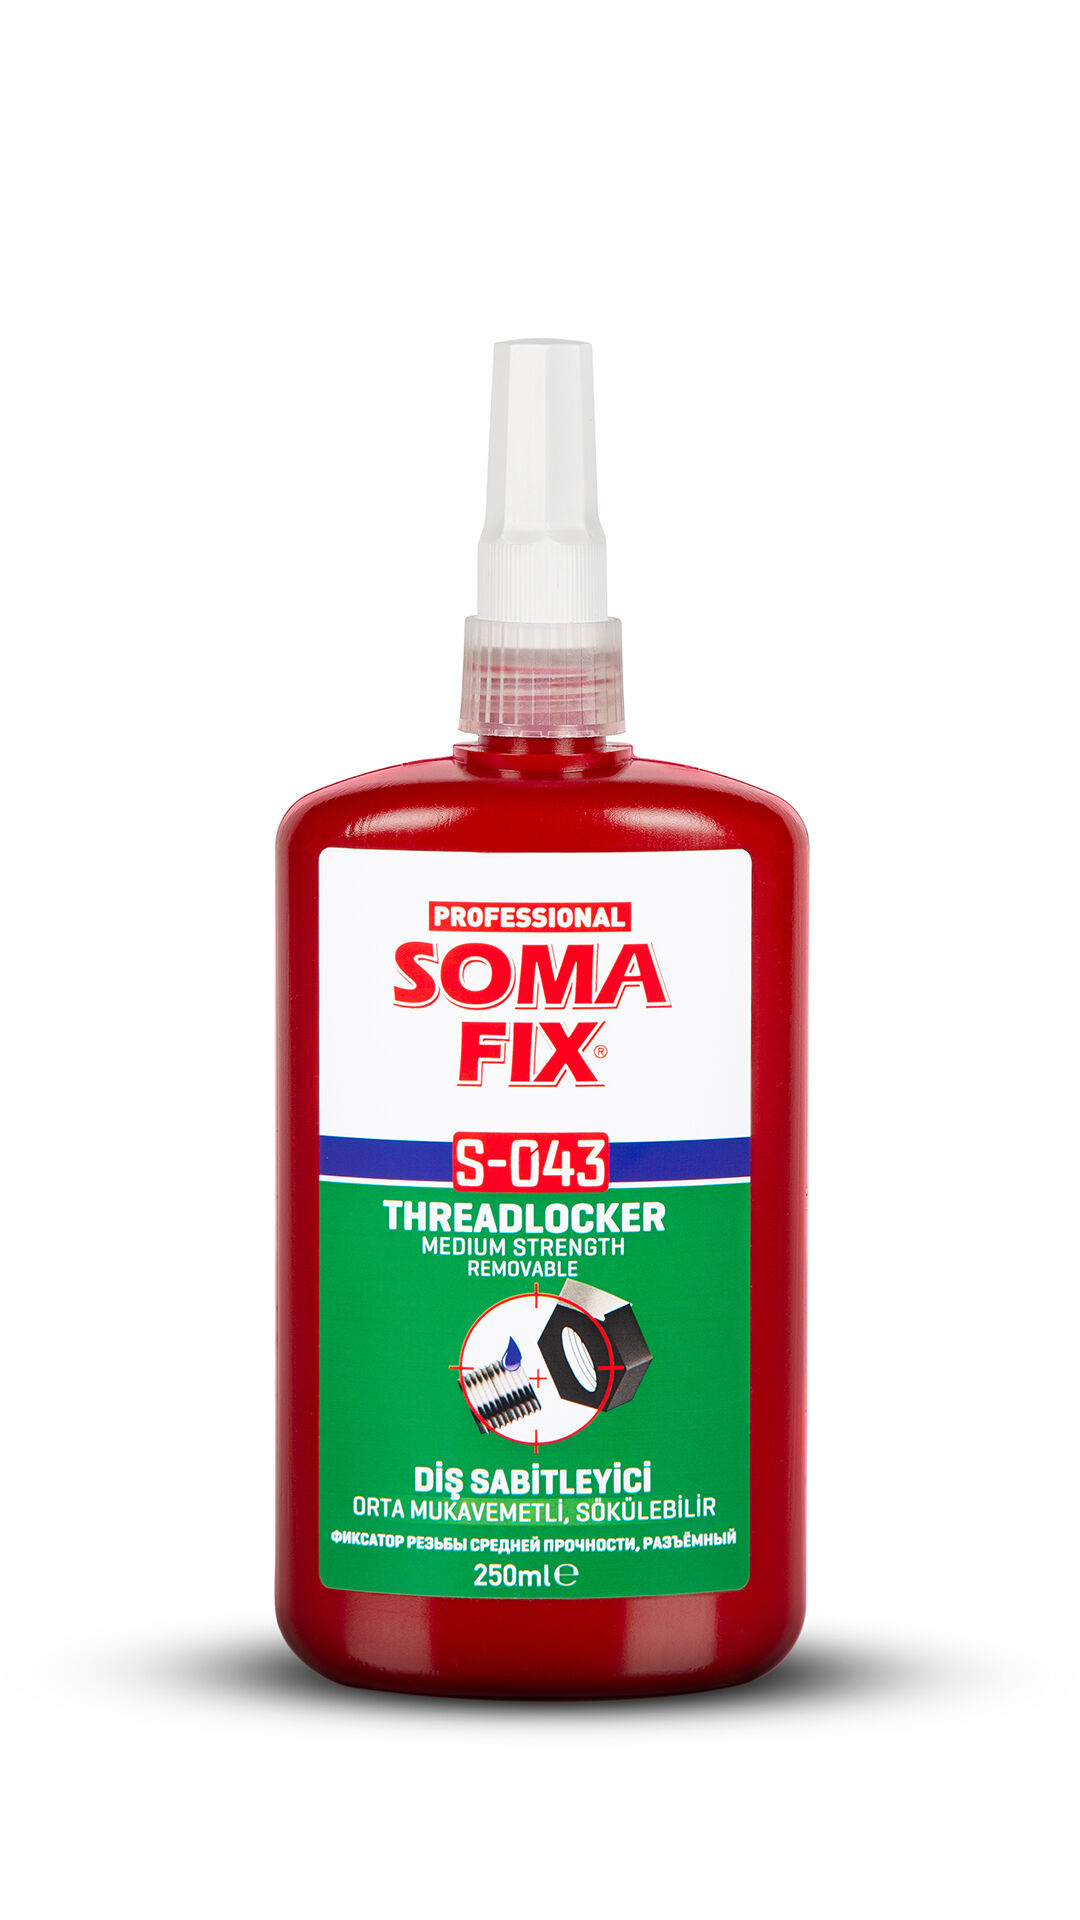 Анаэробный клей SOMA FIX фиксатор резьбы средней прочности, 250 мл